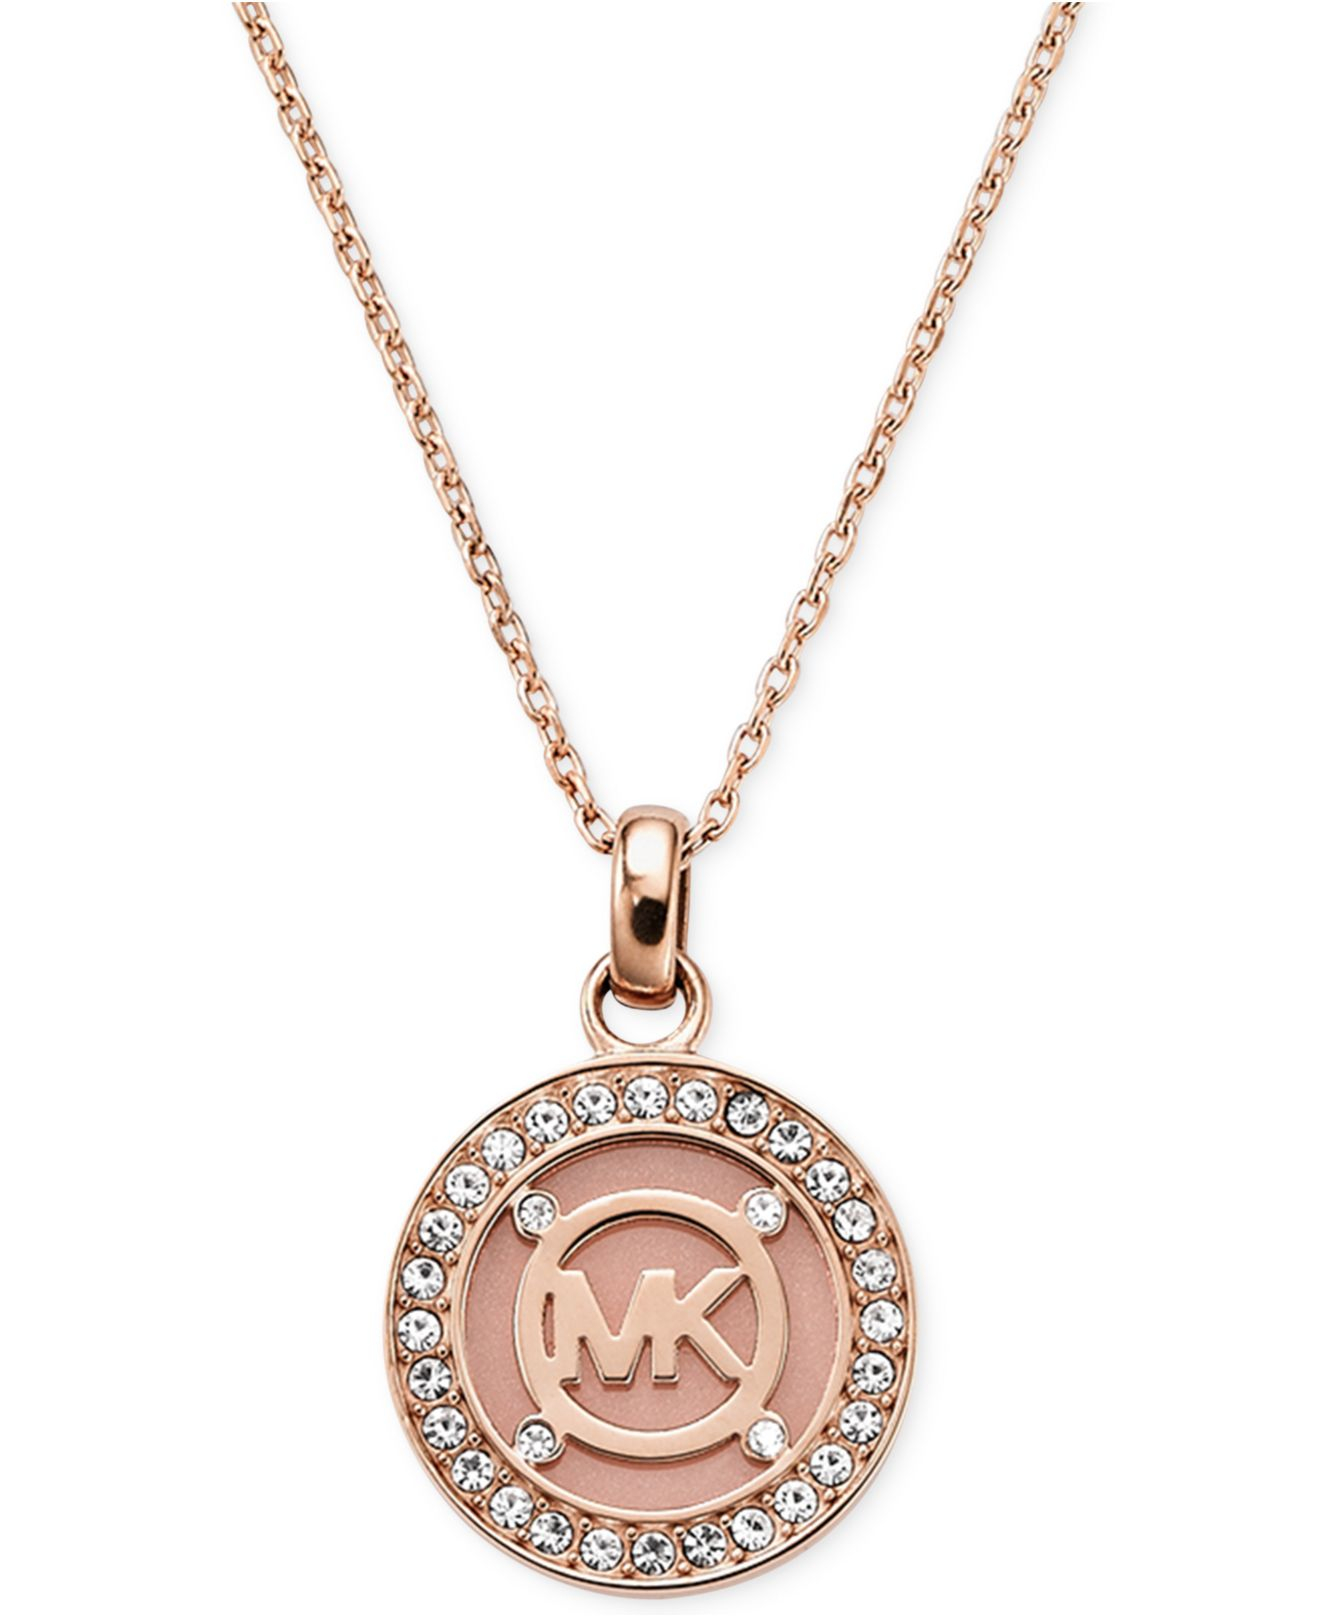 mk necklace rose gold